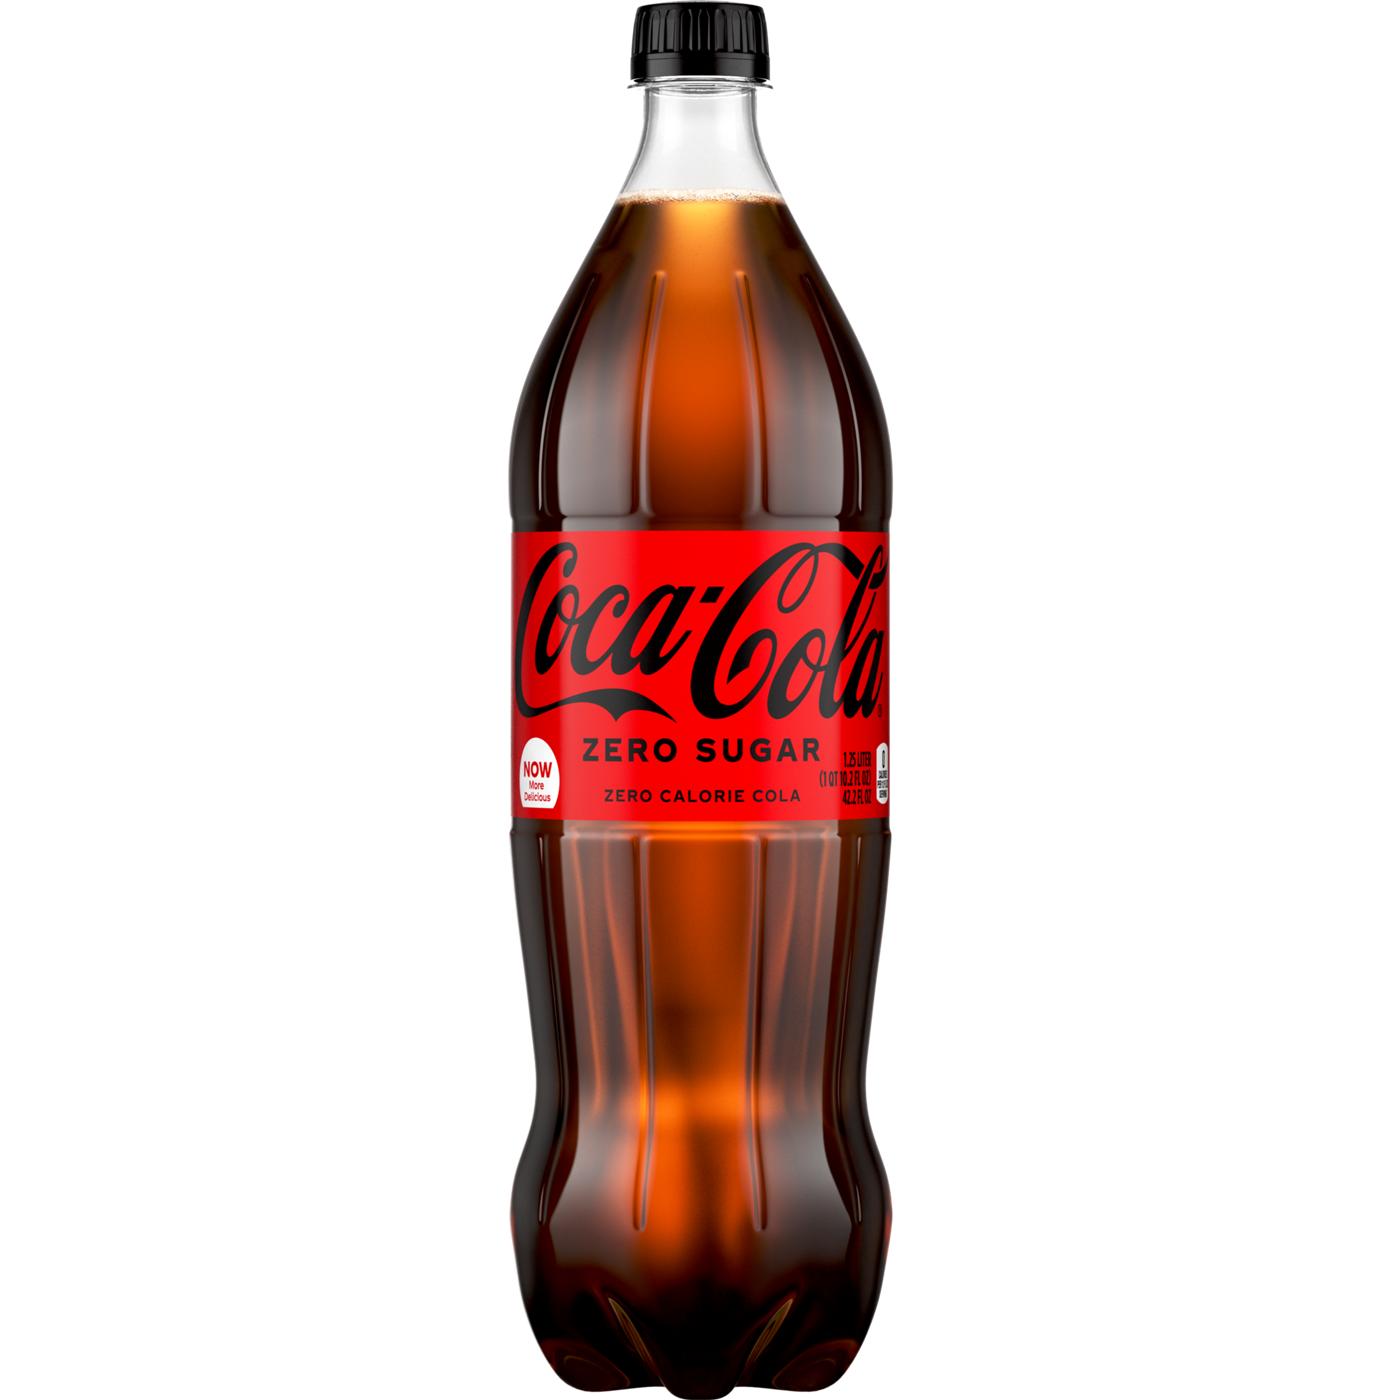 Coca-Cola Zero Sugar Coke; image 1 of 5